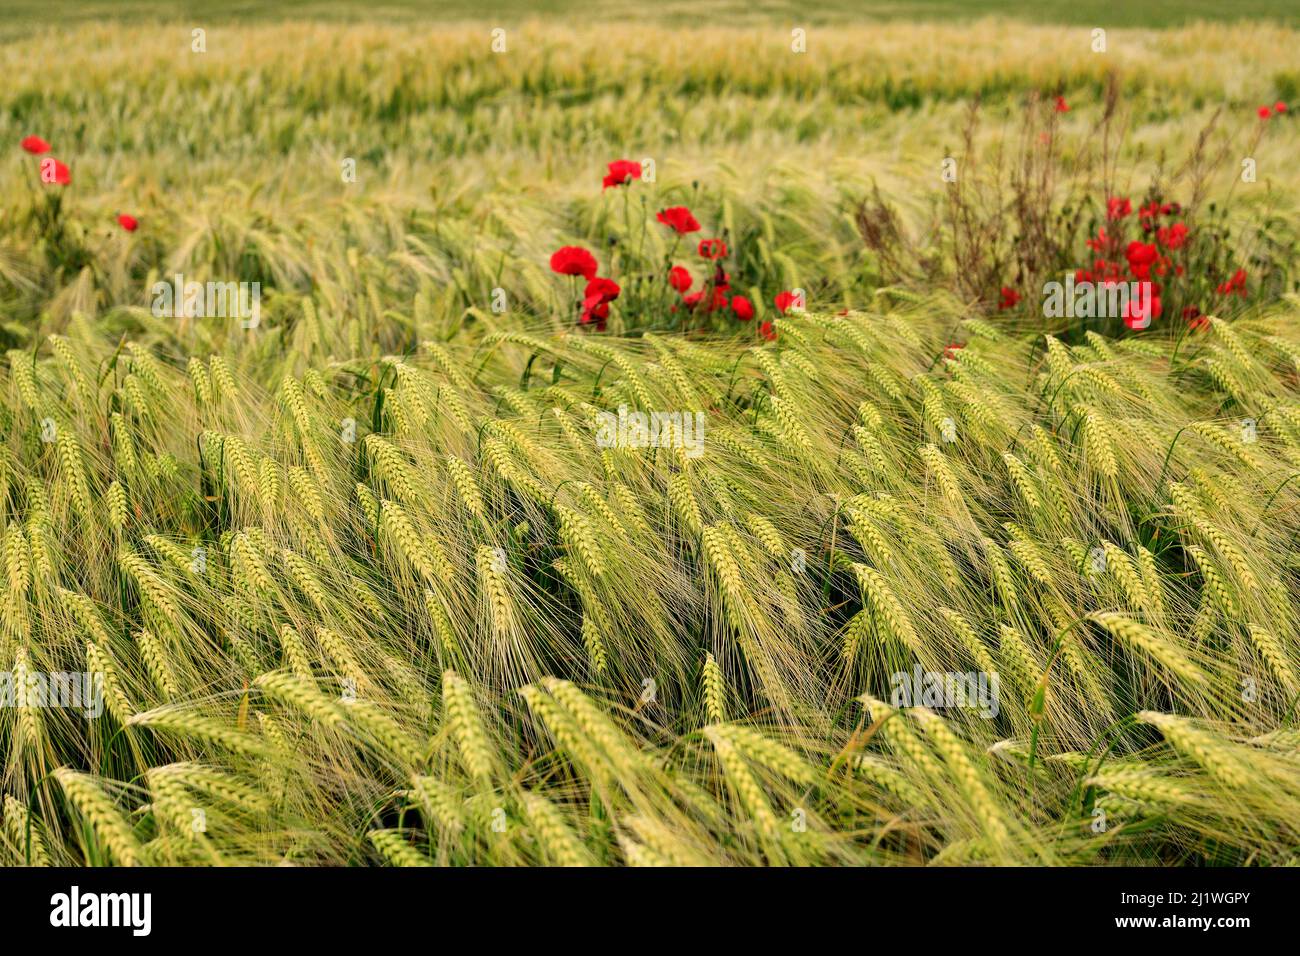 Coquelicots sauvages dans un champ de blé, champ ukrainien. Faible profondeur de champ Banque D'Images